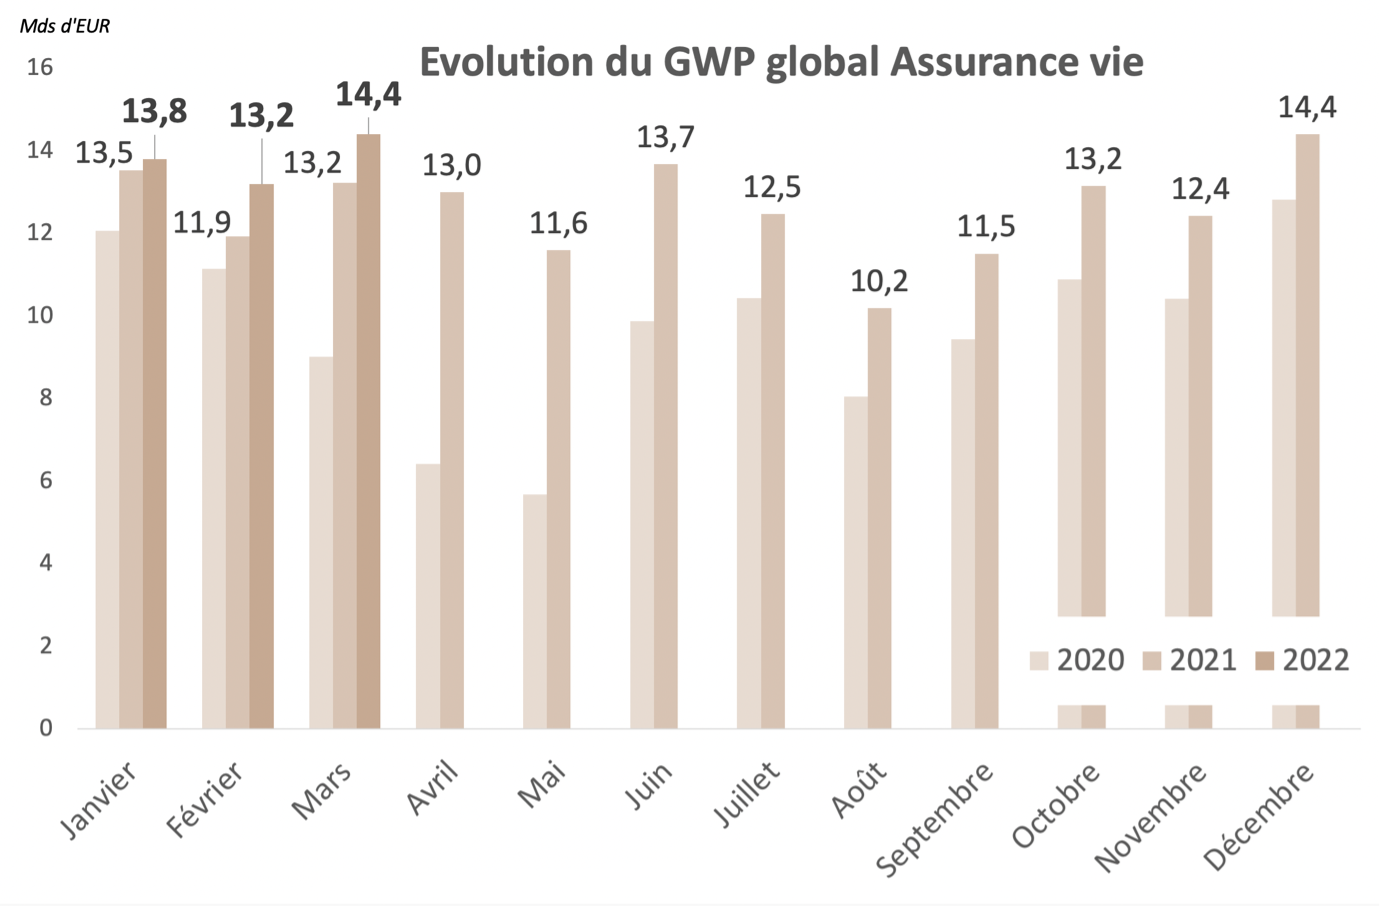 Collecte record pour l'assurance vie au premier trimestre 2022 - Evolution du GWP global Assurance vie